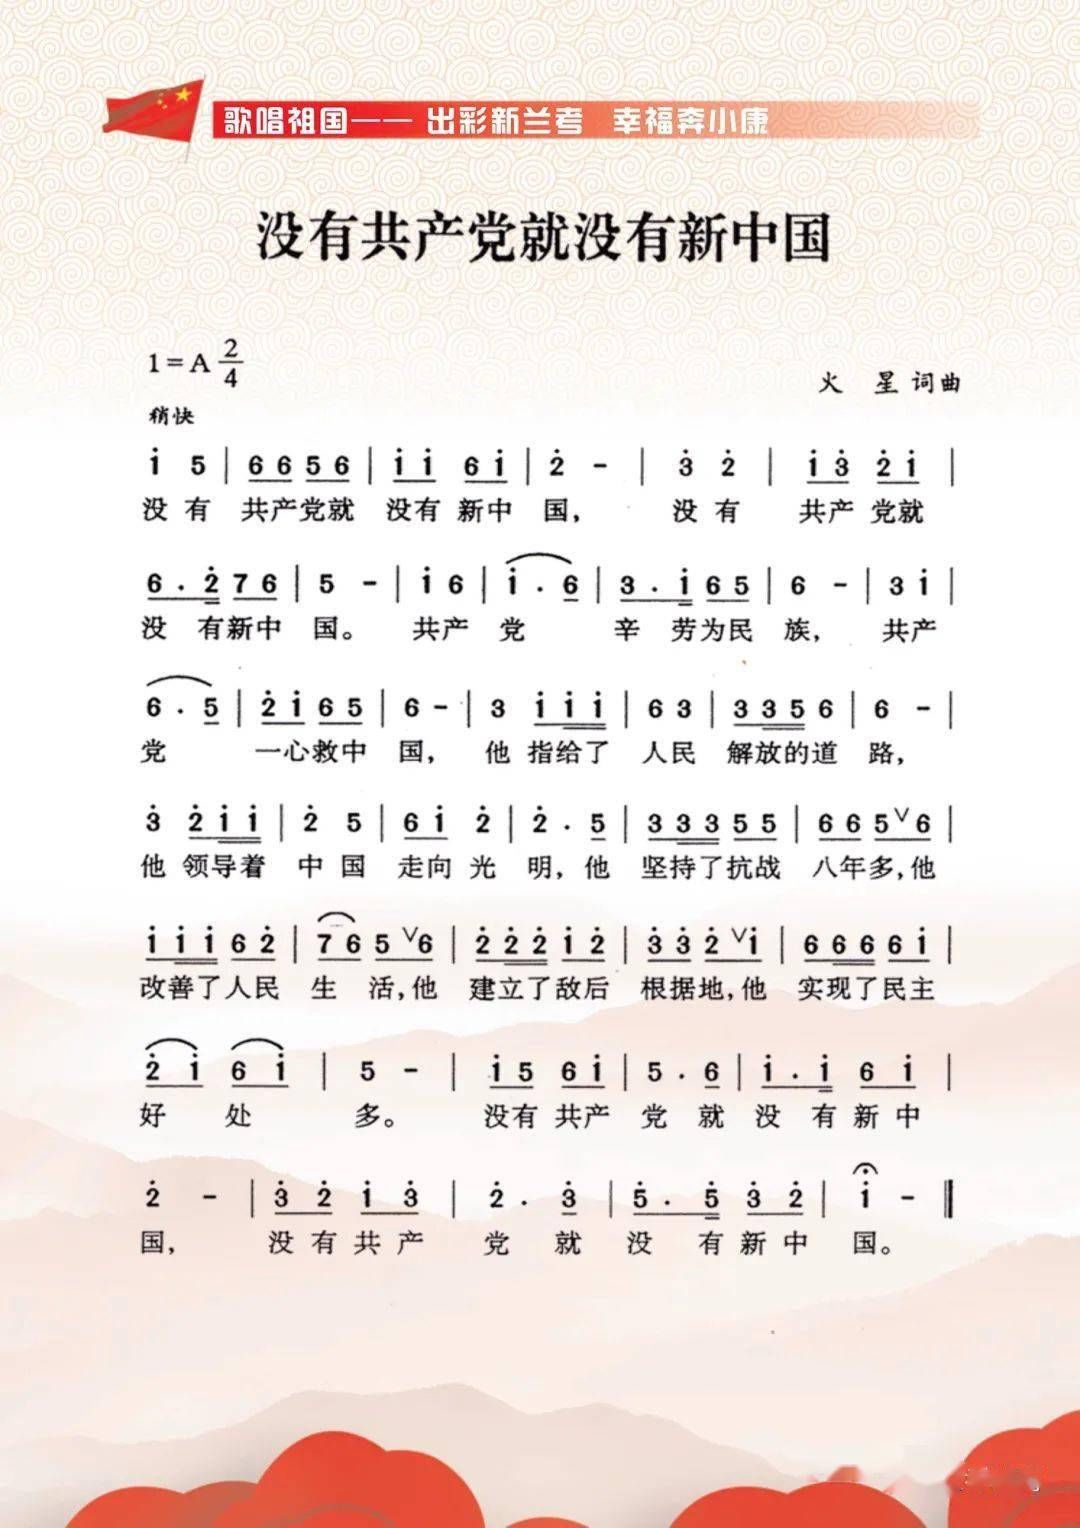 【庆祝中国共产党成立100周年】③--《